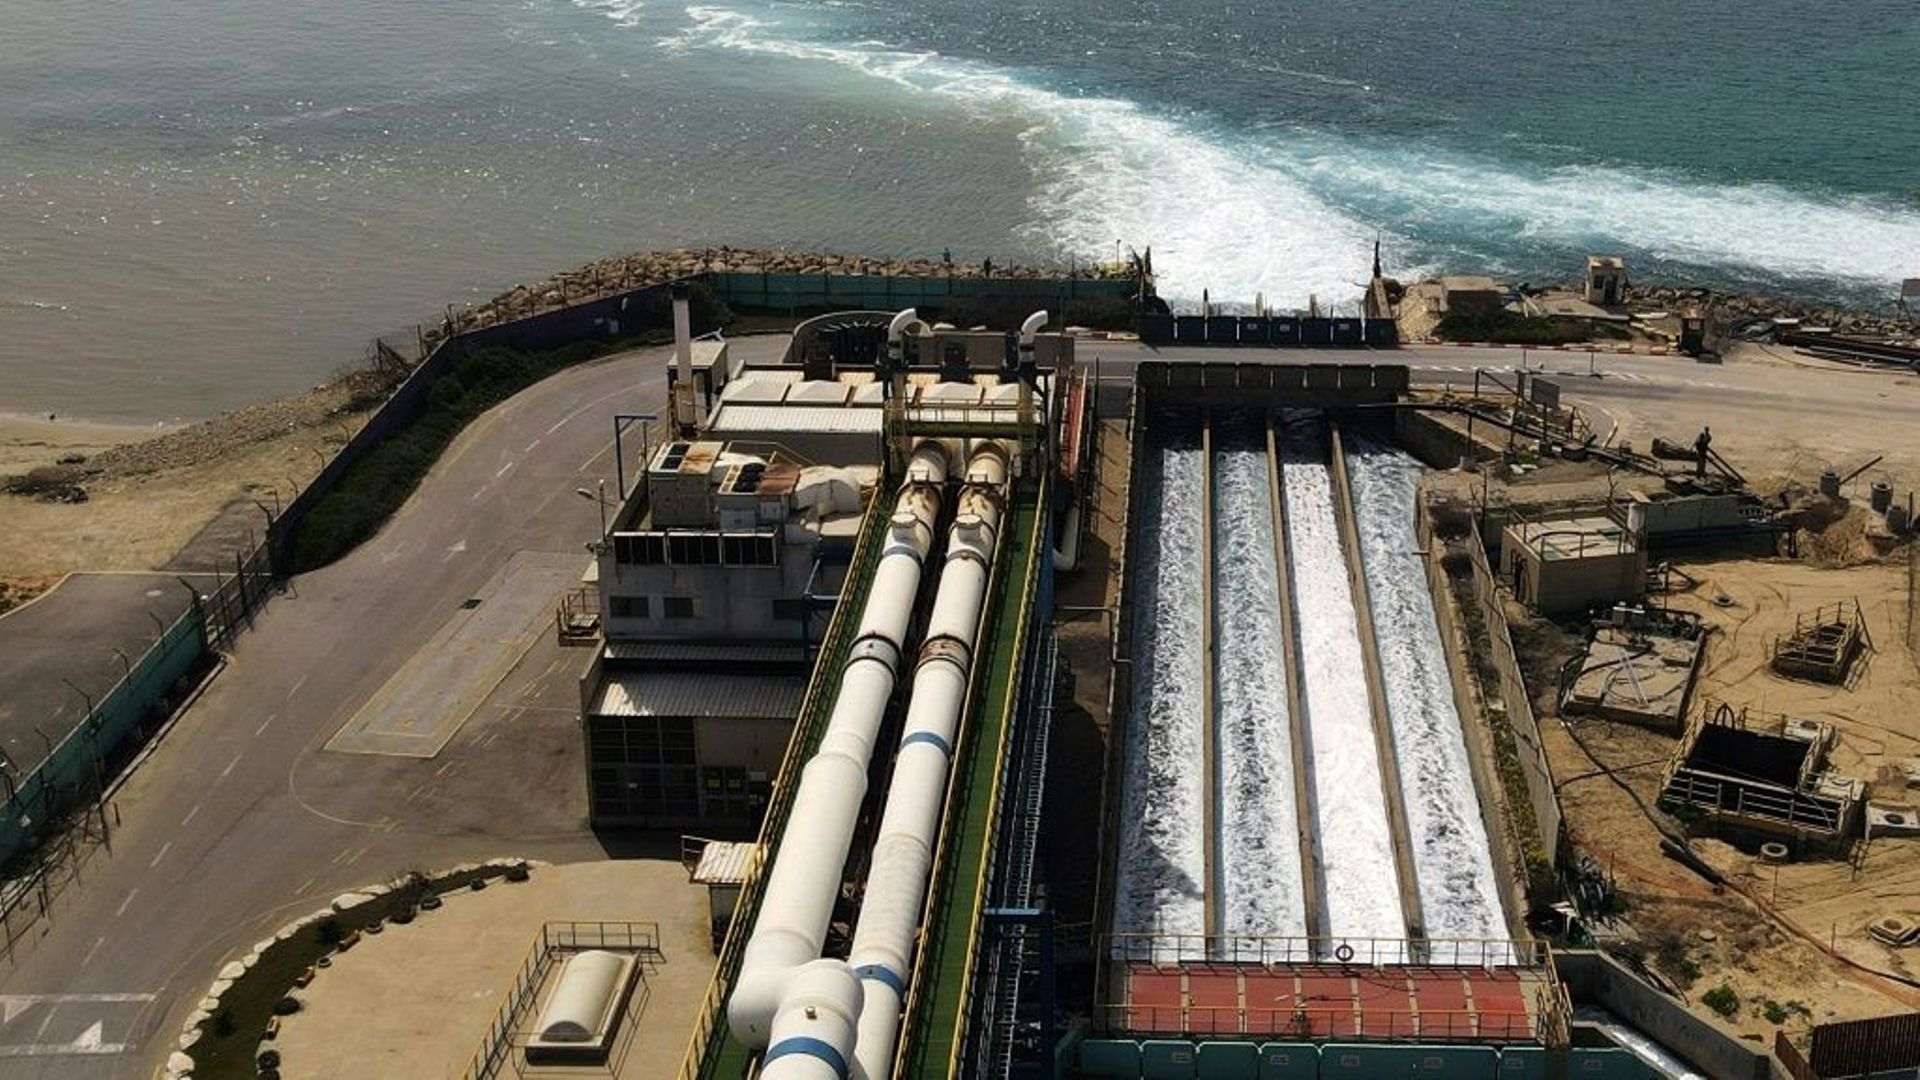 Israël a investi massivement ces dernières années dans des technologies de dessalinisation de l’eau de mer